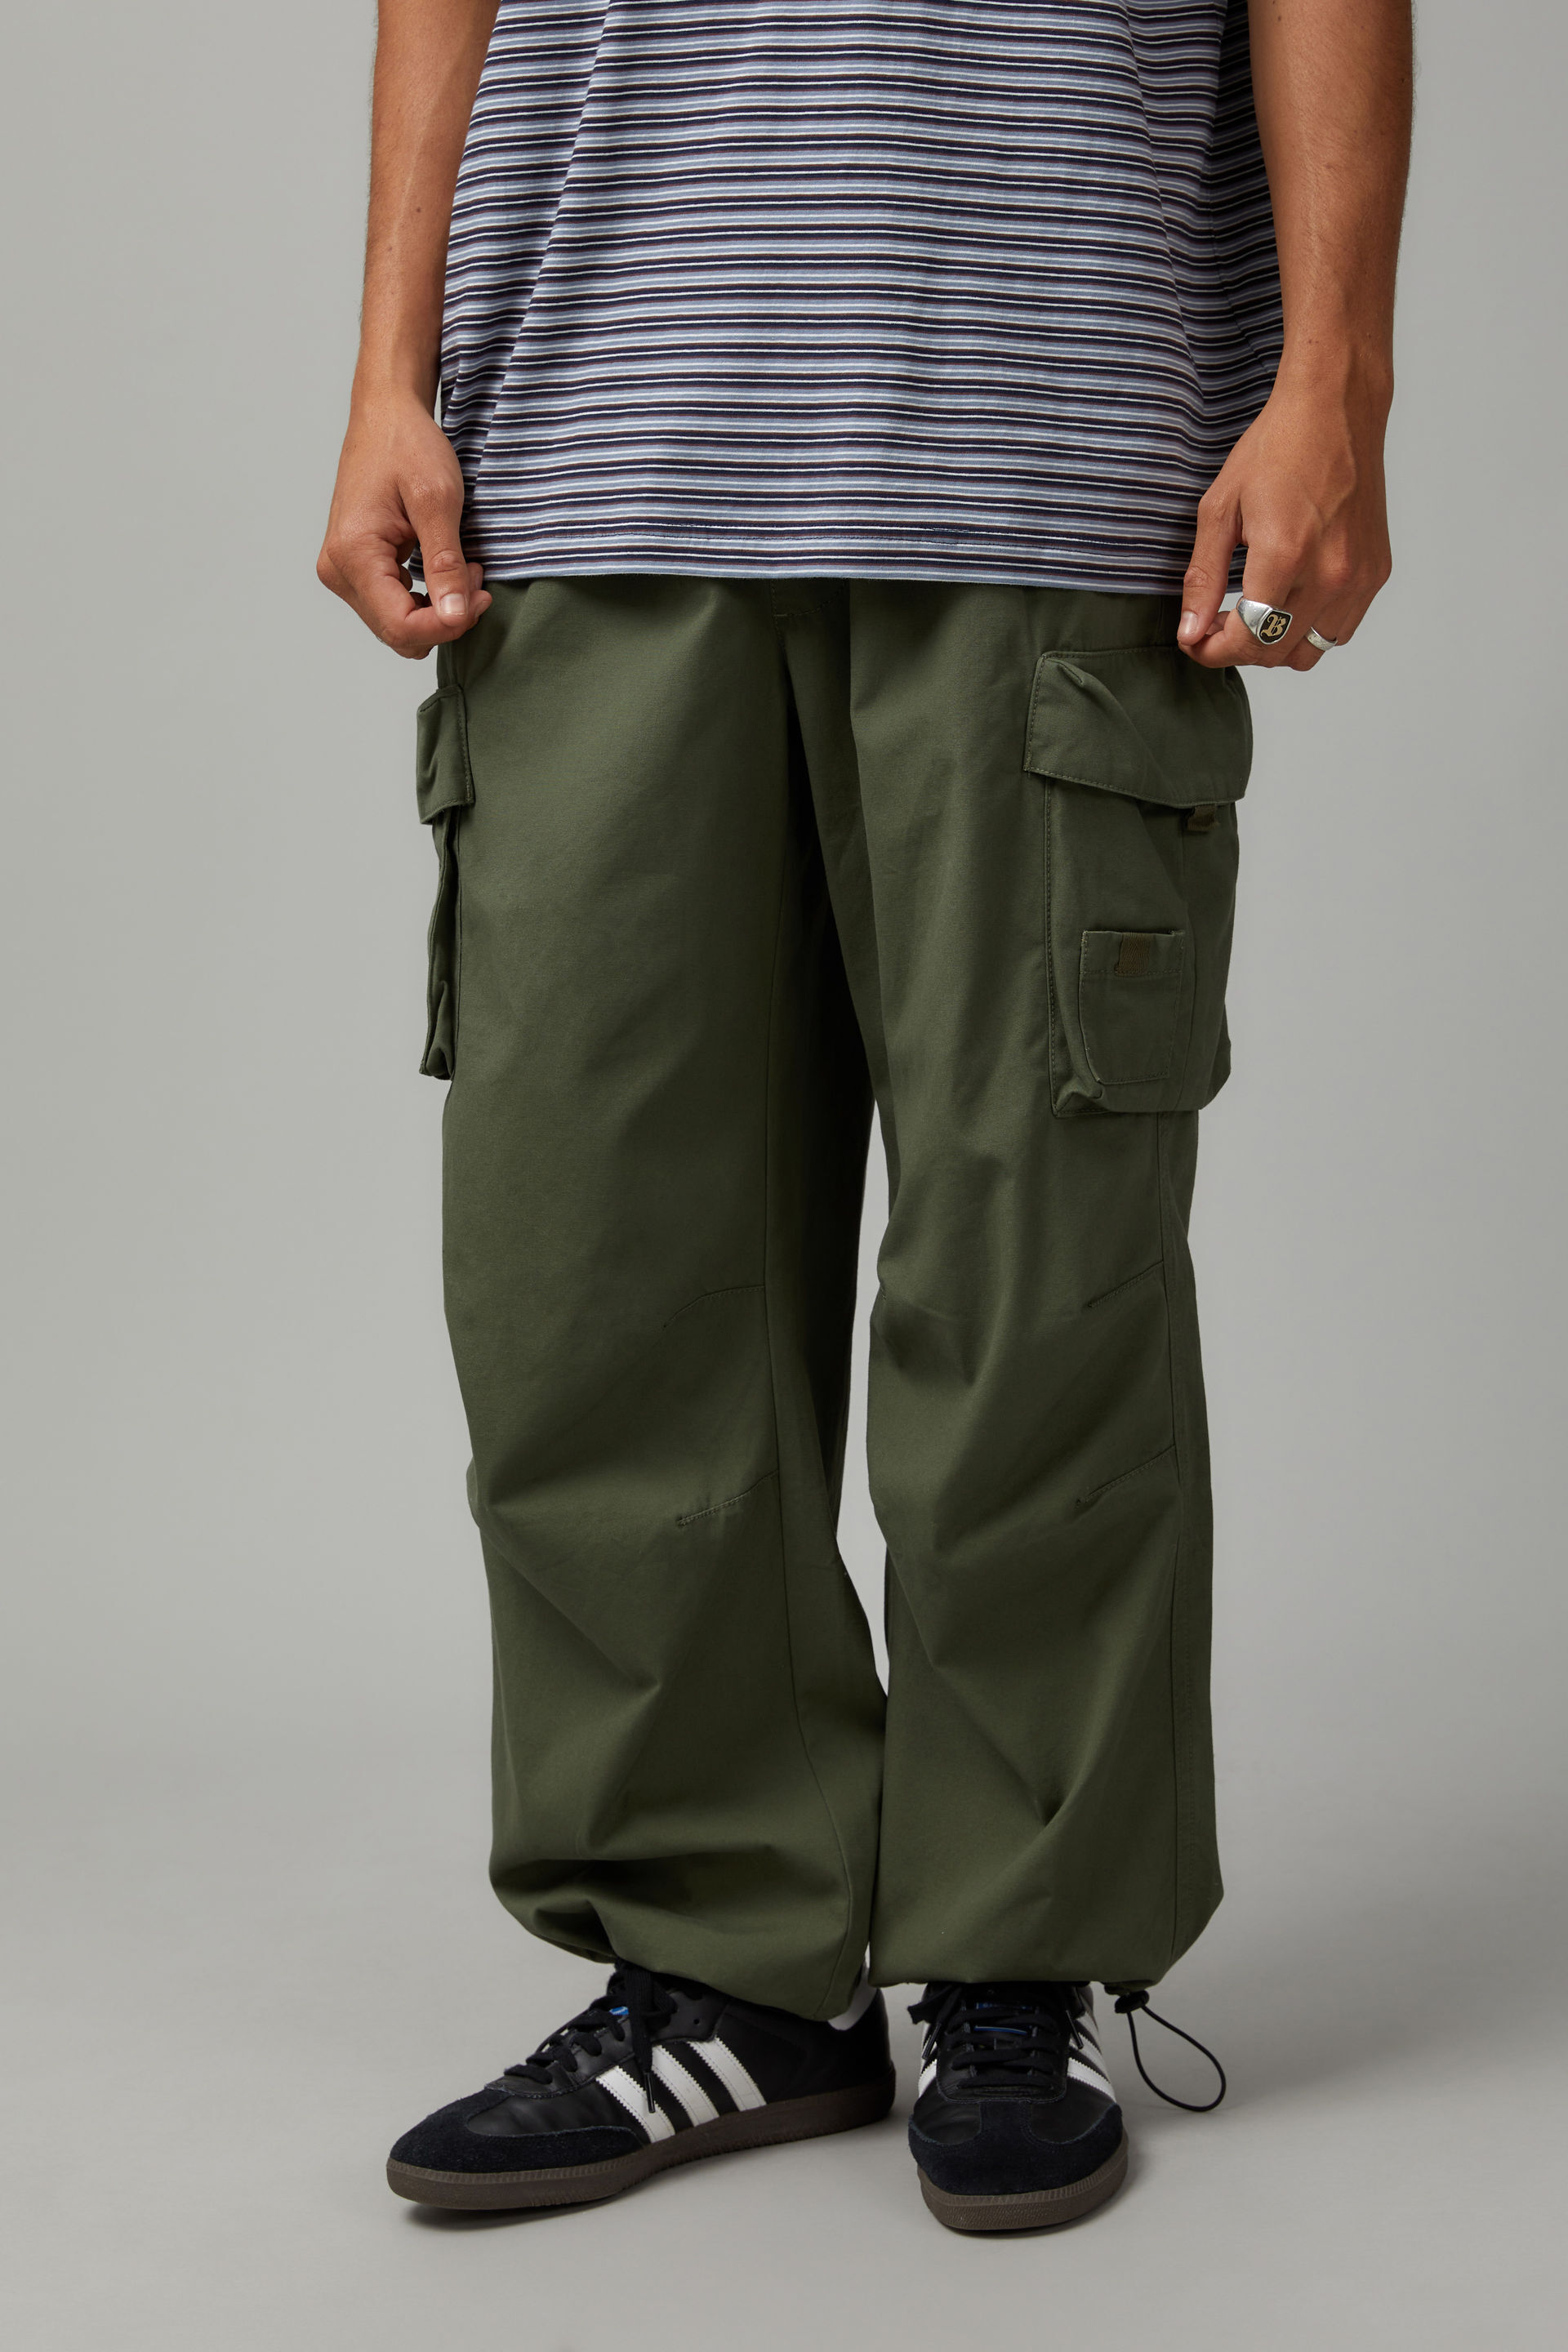 Olive Columbia half-zip cargo pants. Straight/wide... - Depop